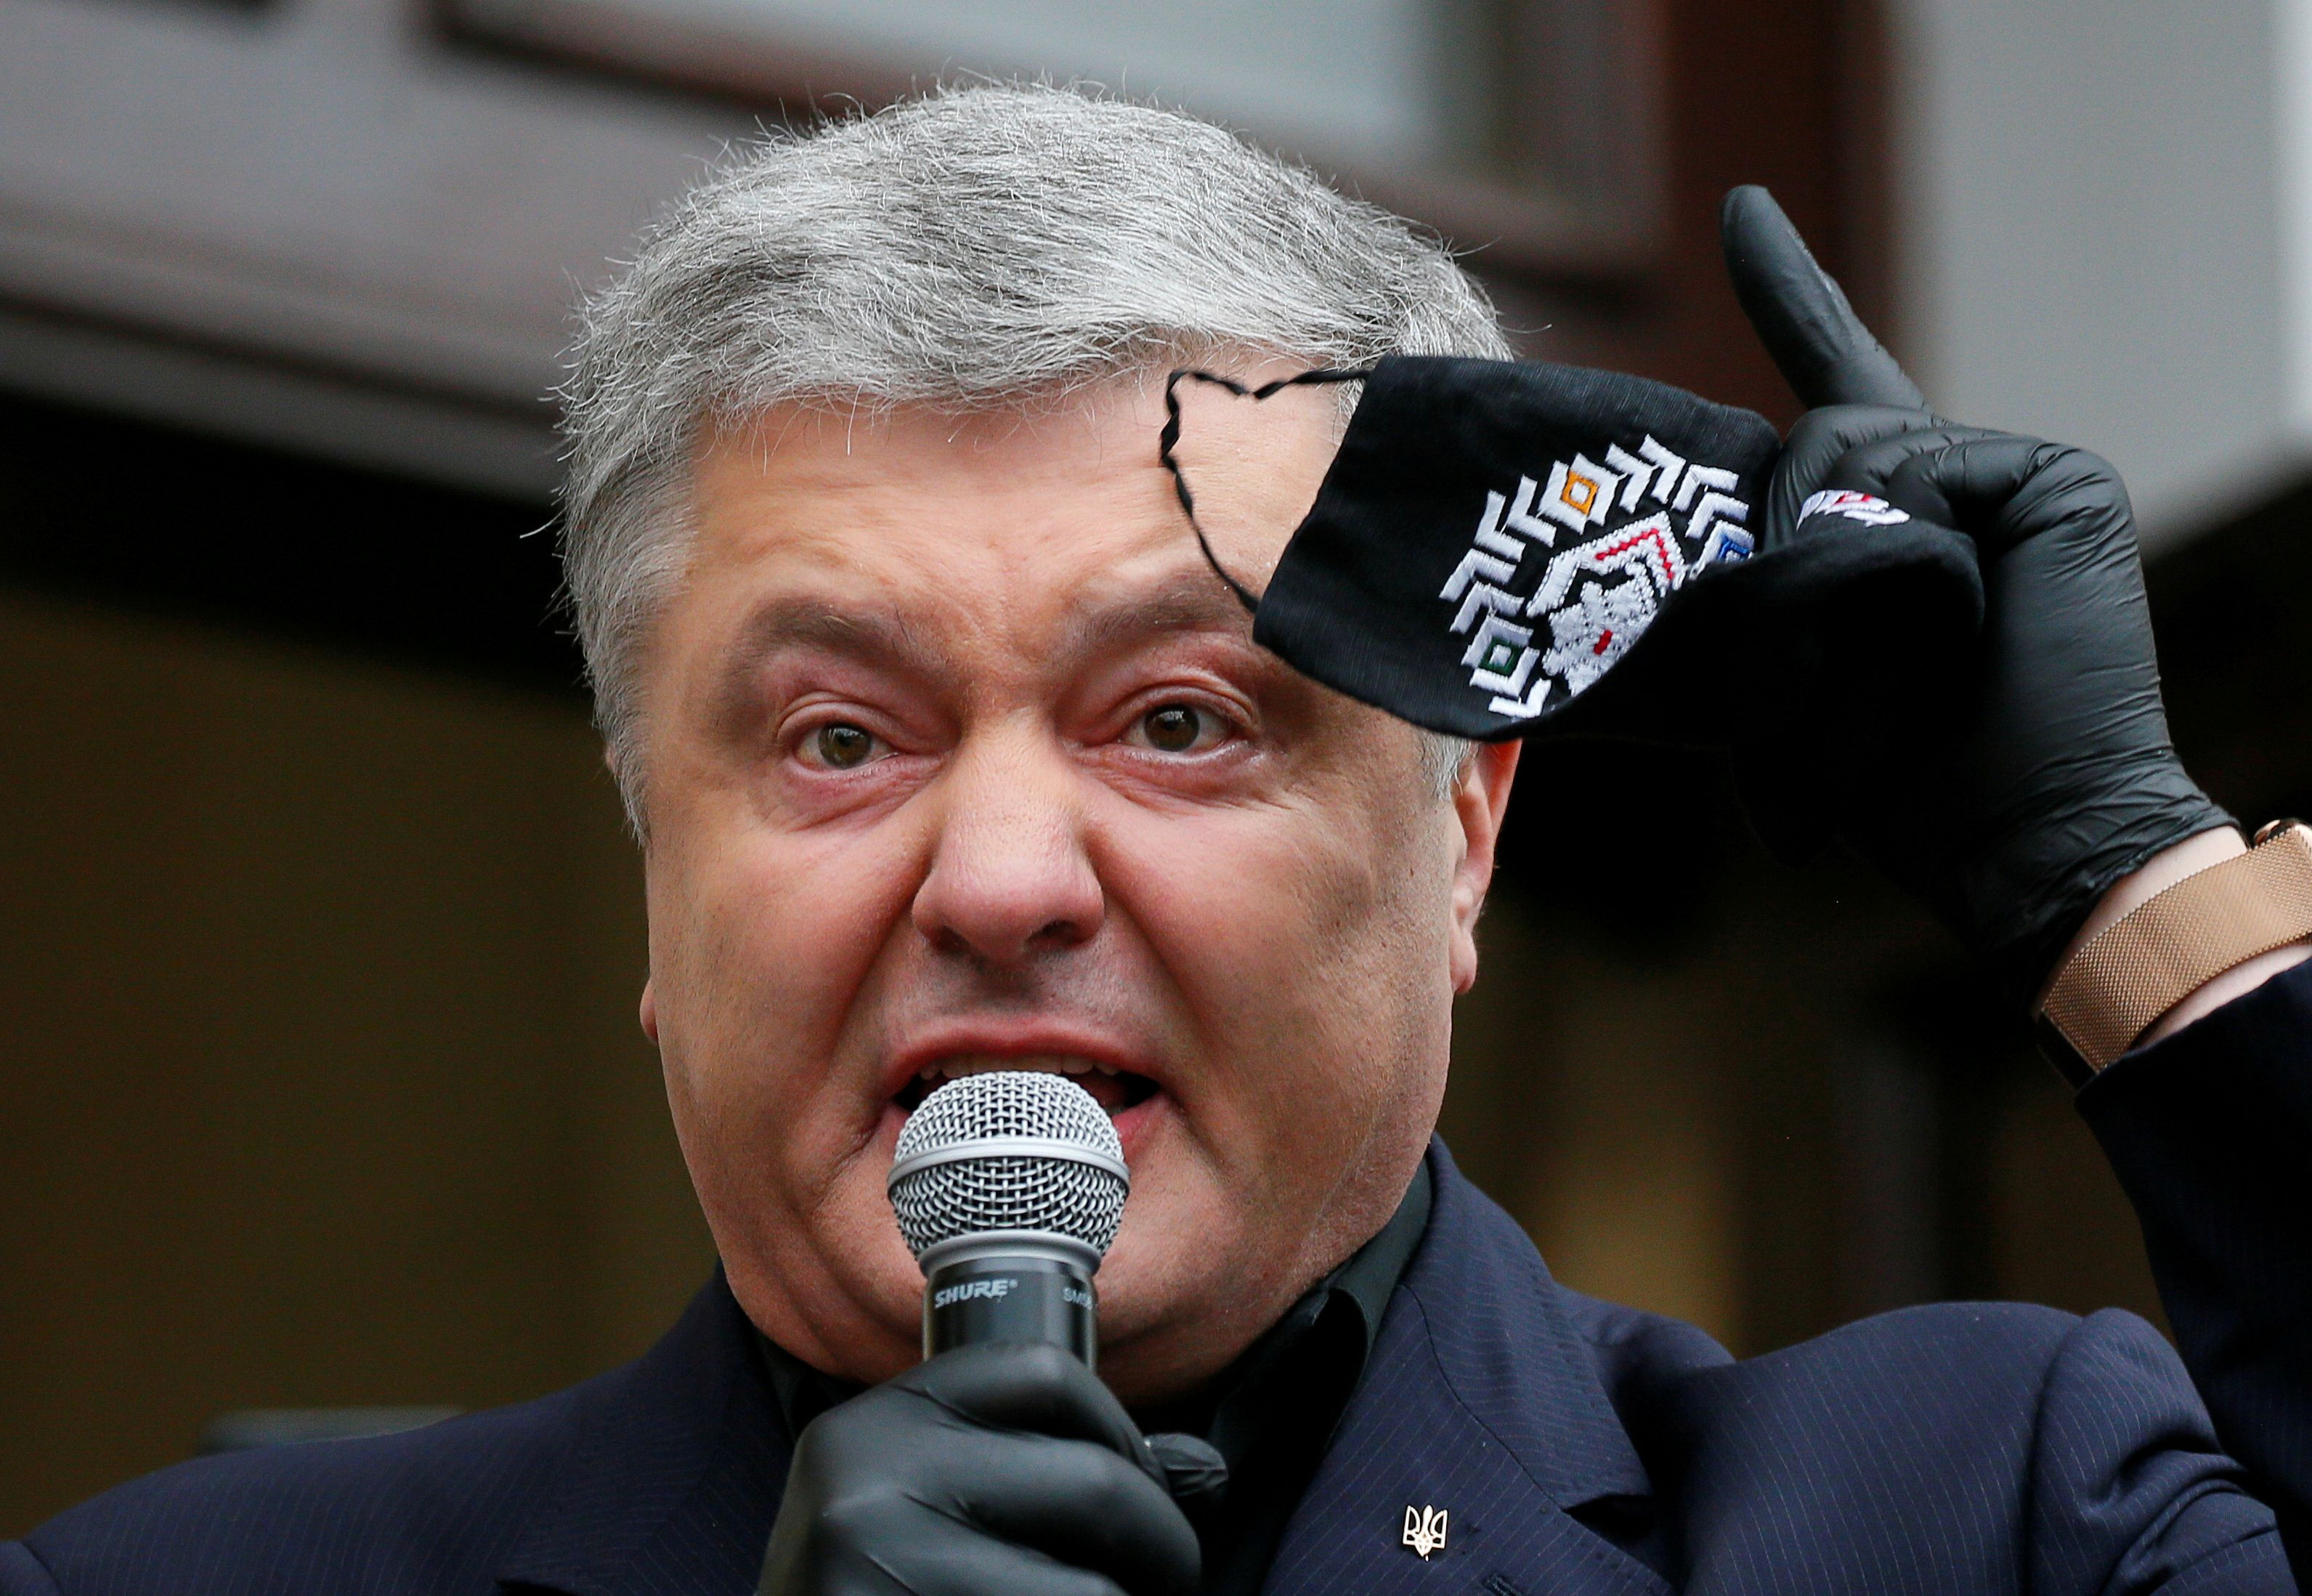 El expresidente ucraniano, Petrós Poroshenko, en junio pasado, habla a sus seguidores antes de entrar a una audiencia judicial por "abuso de poder". Por un "Tribunal de Corrupción" tuvo serios tironeos con el FMI
(REUTERS/Gleb Garanich/File Photo)